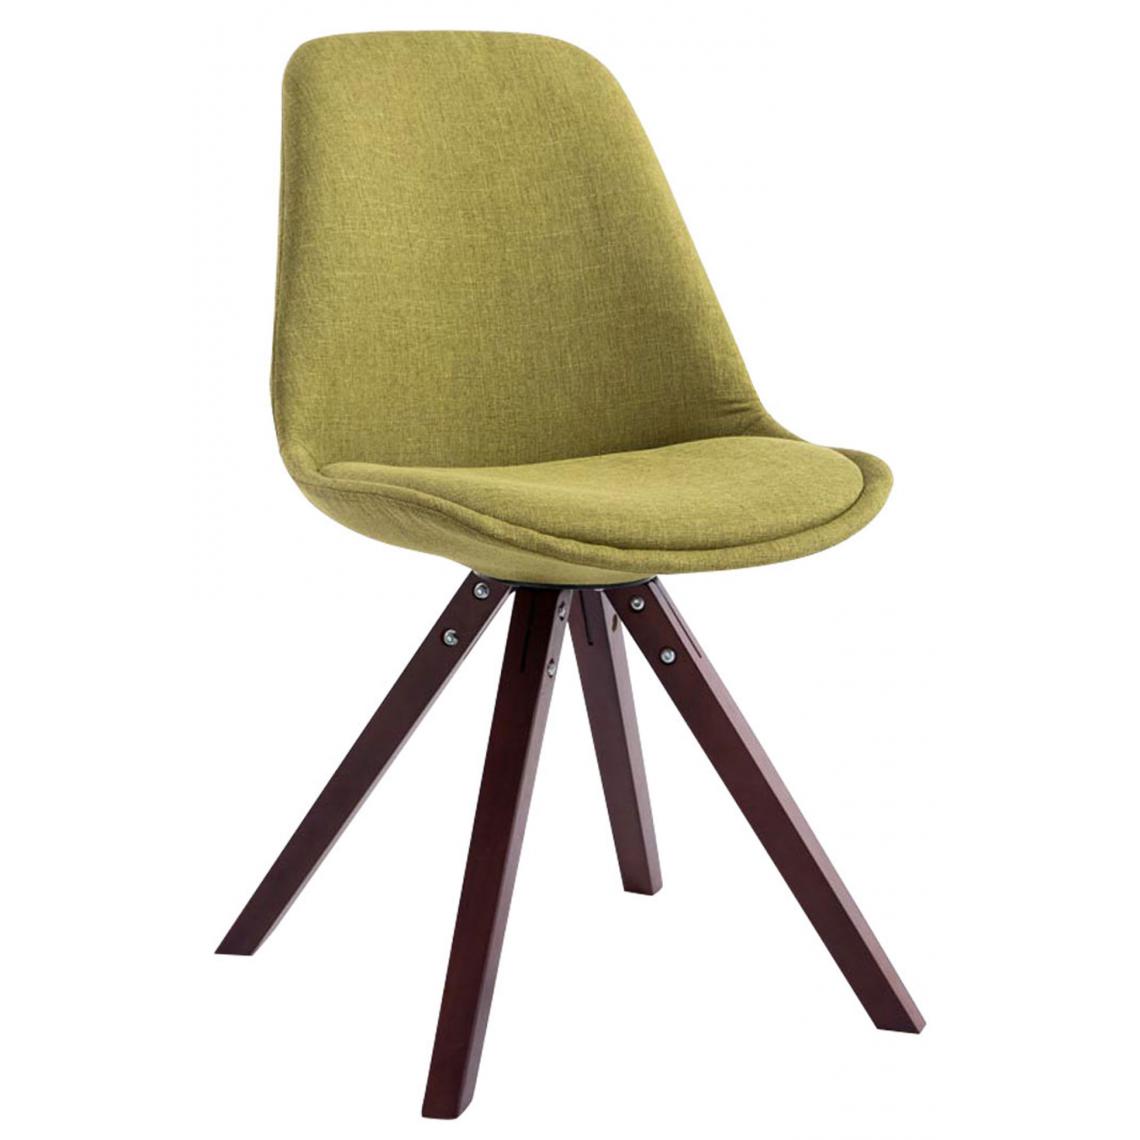 Icaverne - Superbe Chaise visiteur selection Katmandou tissu carré cappuccino (chêne) couleur vert - Chaises